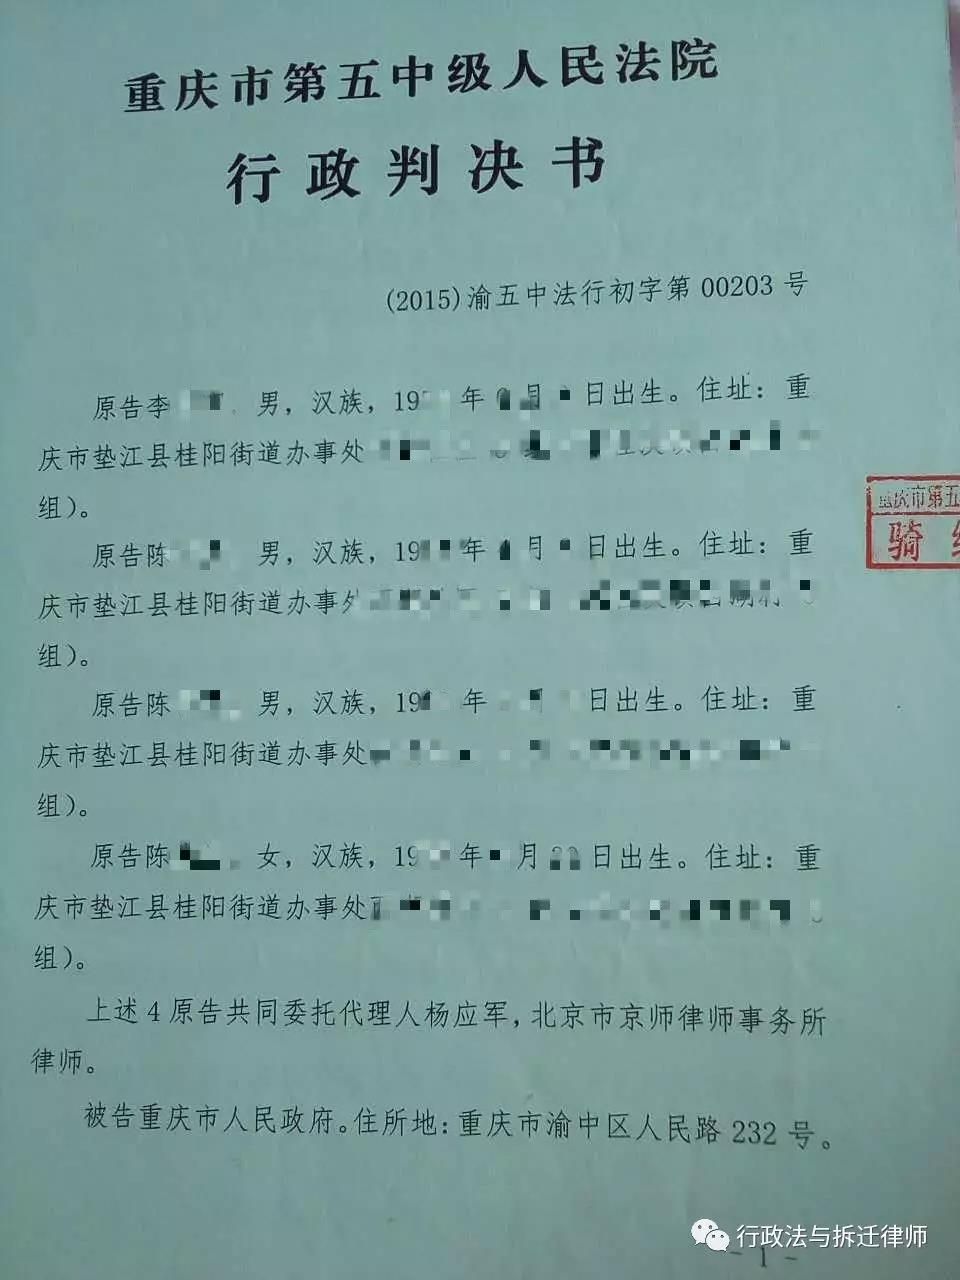 （胜诉）未依法送达文书，重庆市人民政府的行为被确认违法